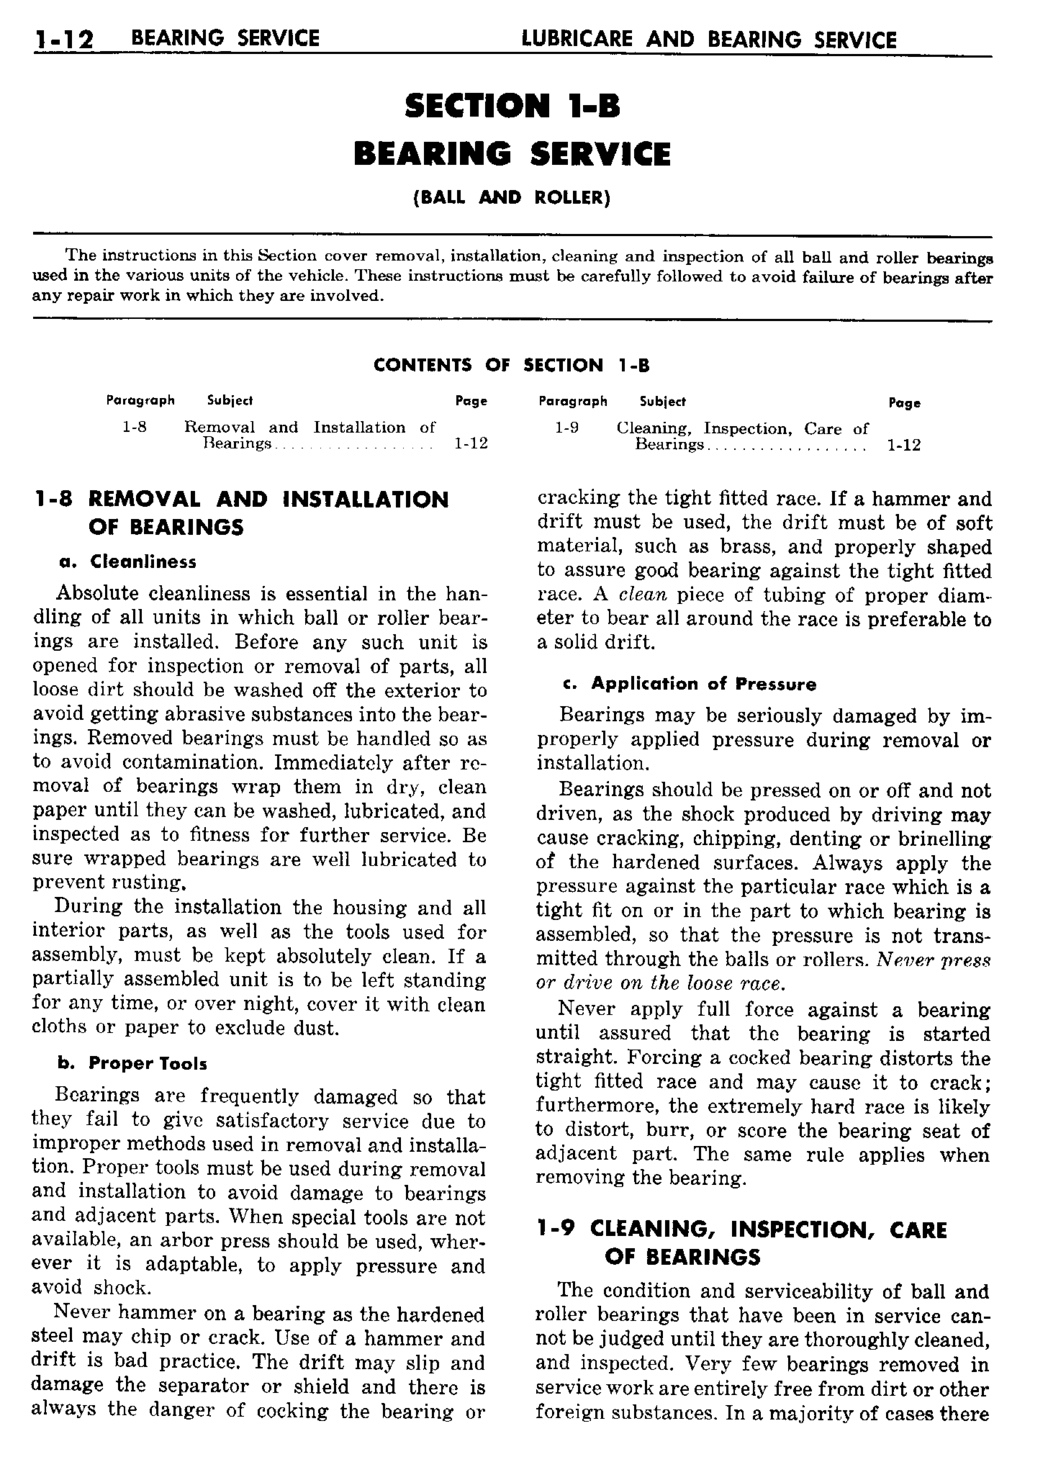 n_02 1960 Buick Shop Manual - Lubricare-012-012.jpg